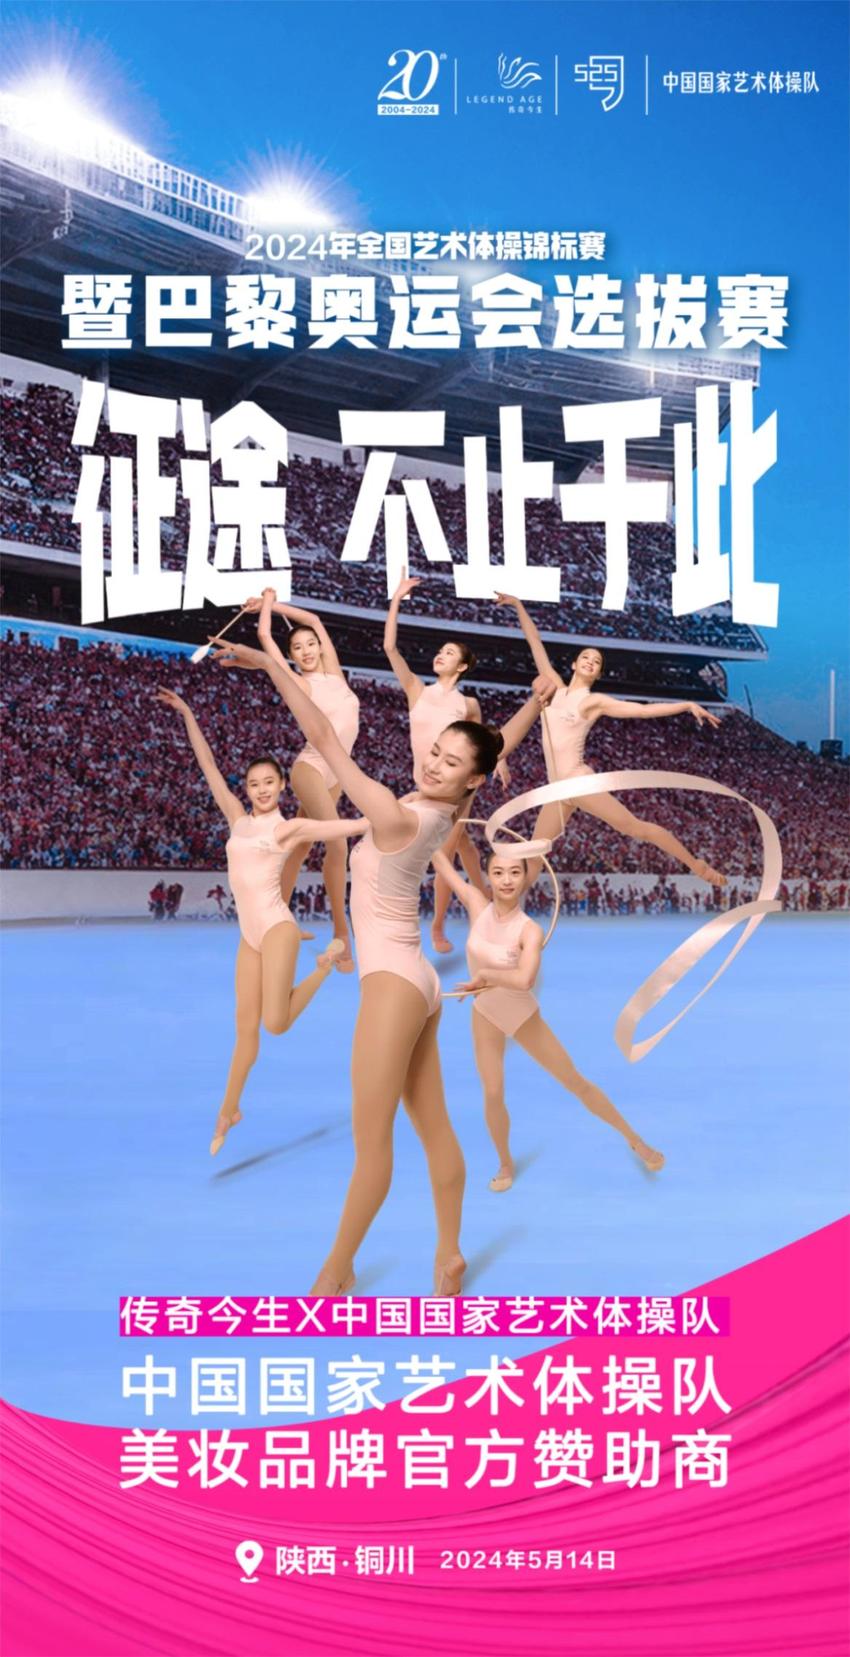 共襄体育盛宴，共享传奇荣光丨传奇今生为中国国家艺术体操队冲刺巴黎加油助威！